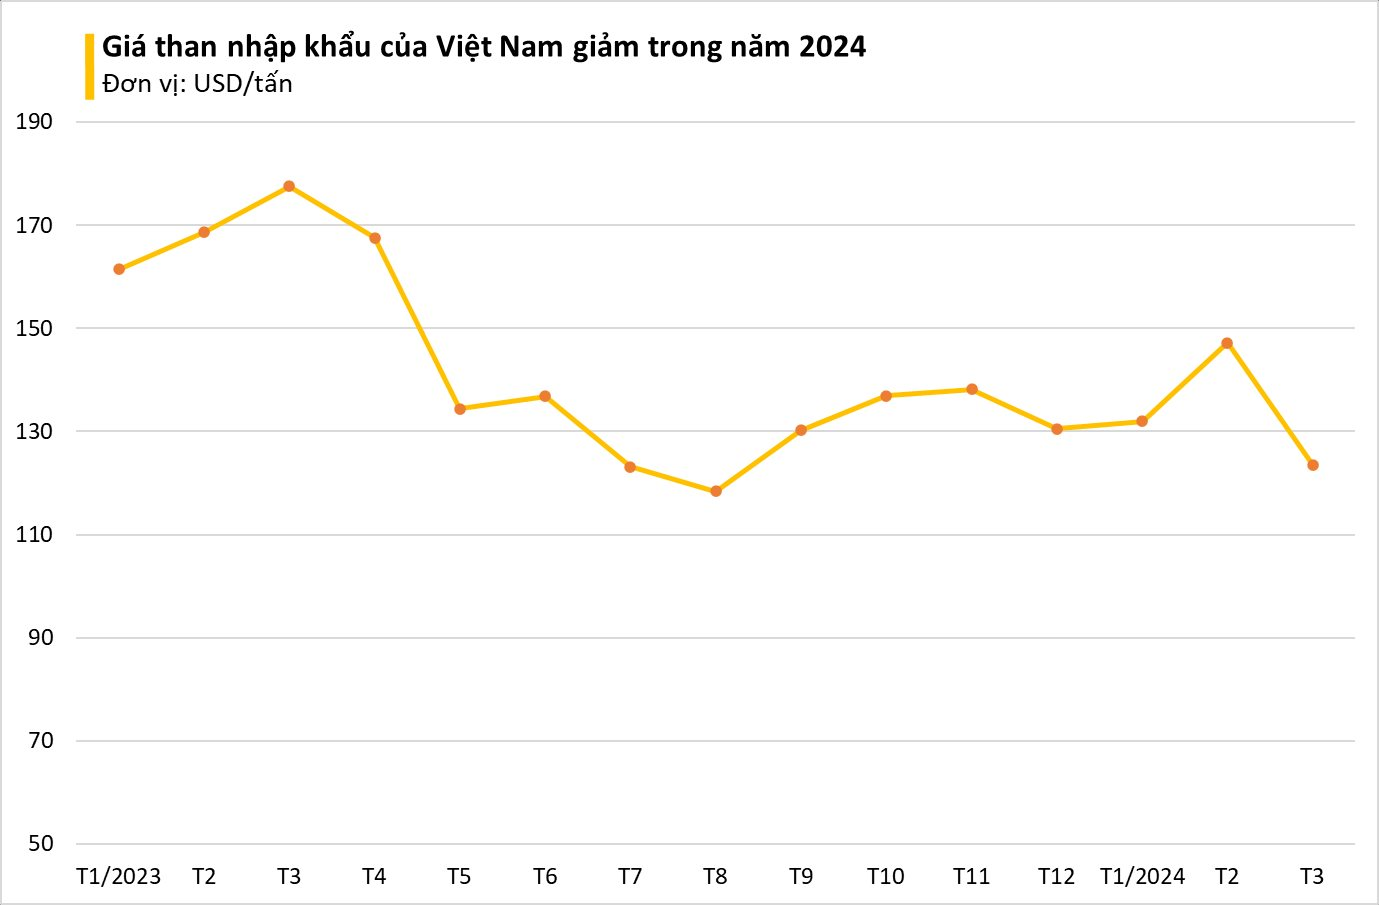 Giá rẻ hấp dẫn, Nga ưu ái xuất sang Việt Nam một nguyên liệu cực quan trọng: nhập khẩu tăng hơn 140%, 'vàng đen' Nga đủ dùng tận 300 năm- Ảnh 1.